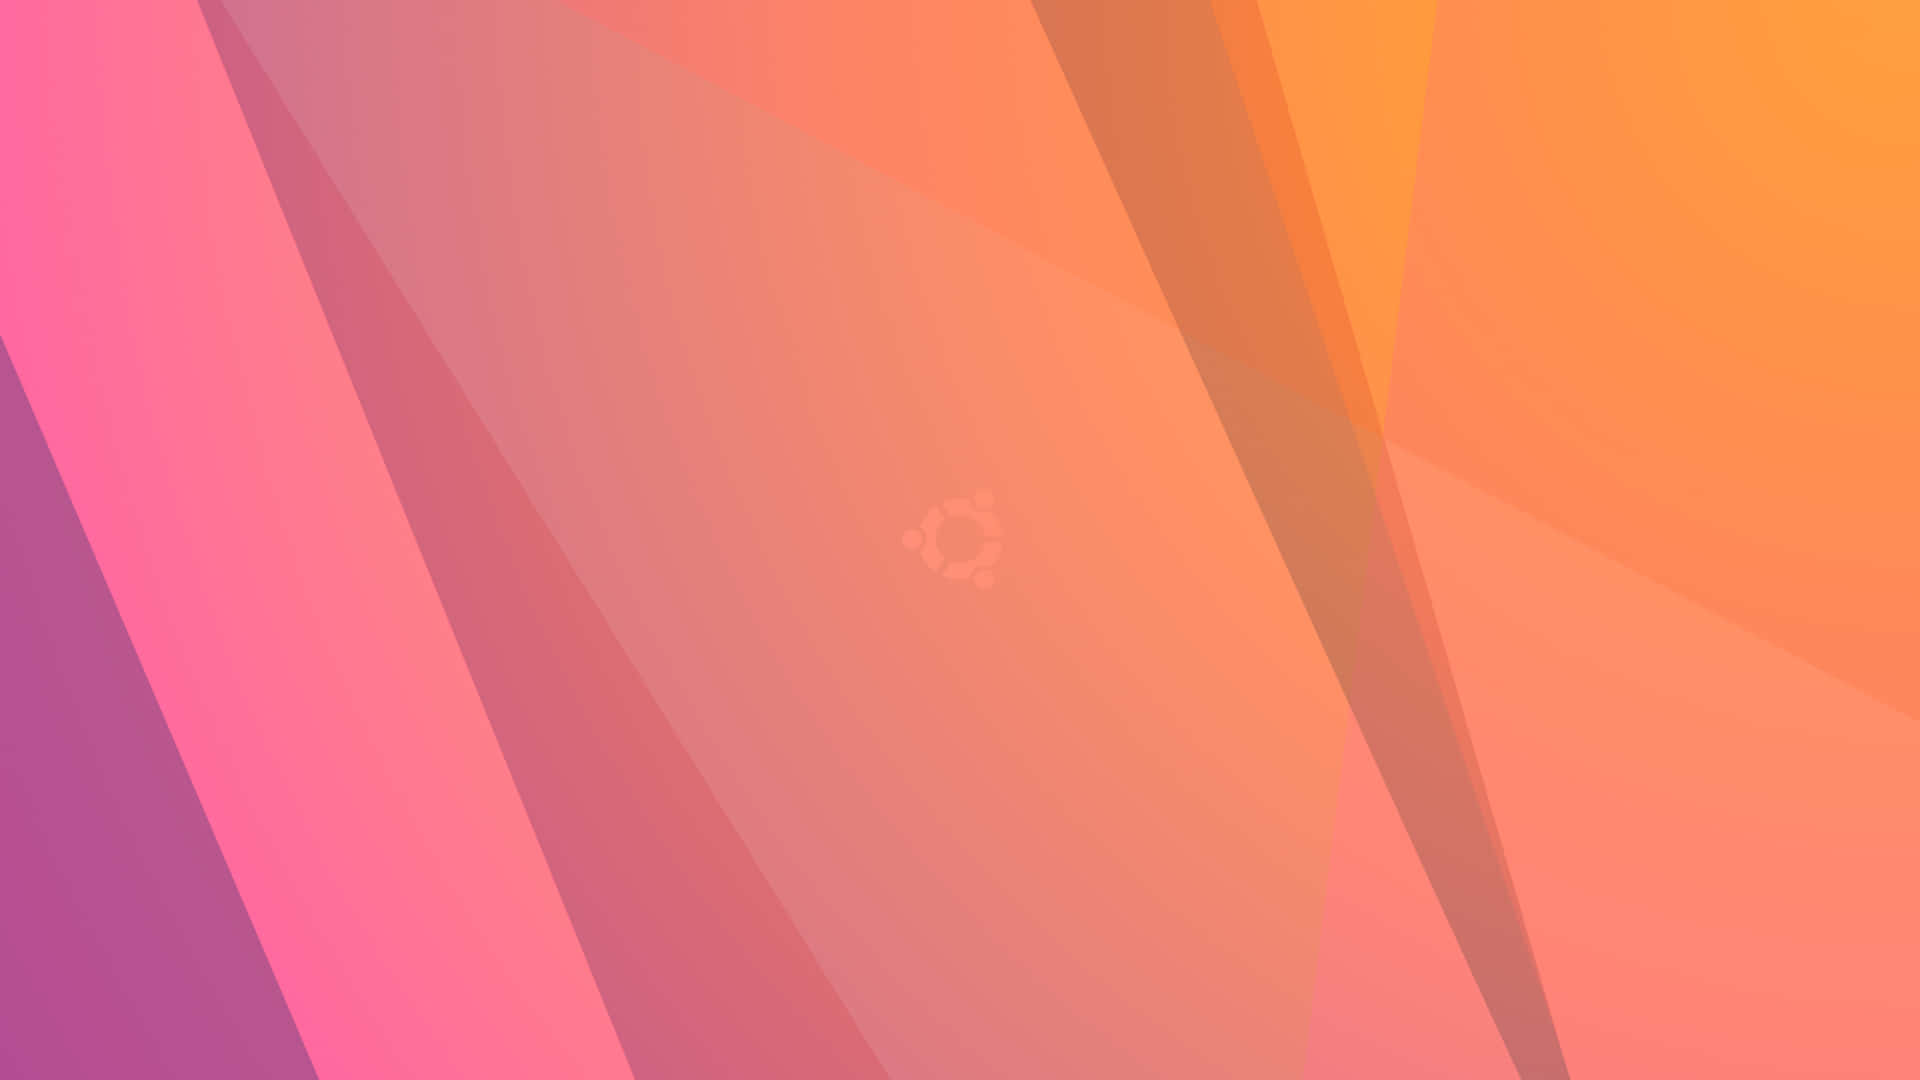 Wunderschöngestalteter Ubuntu-desktop